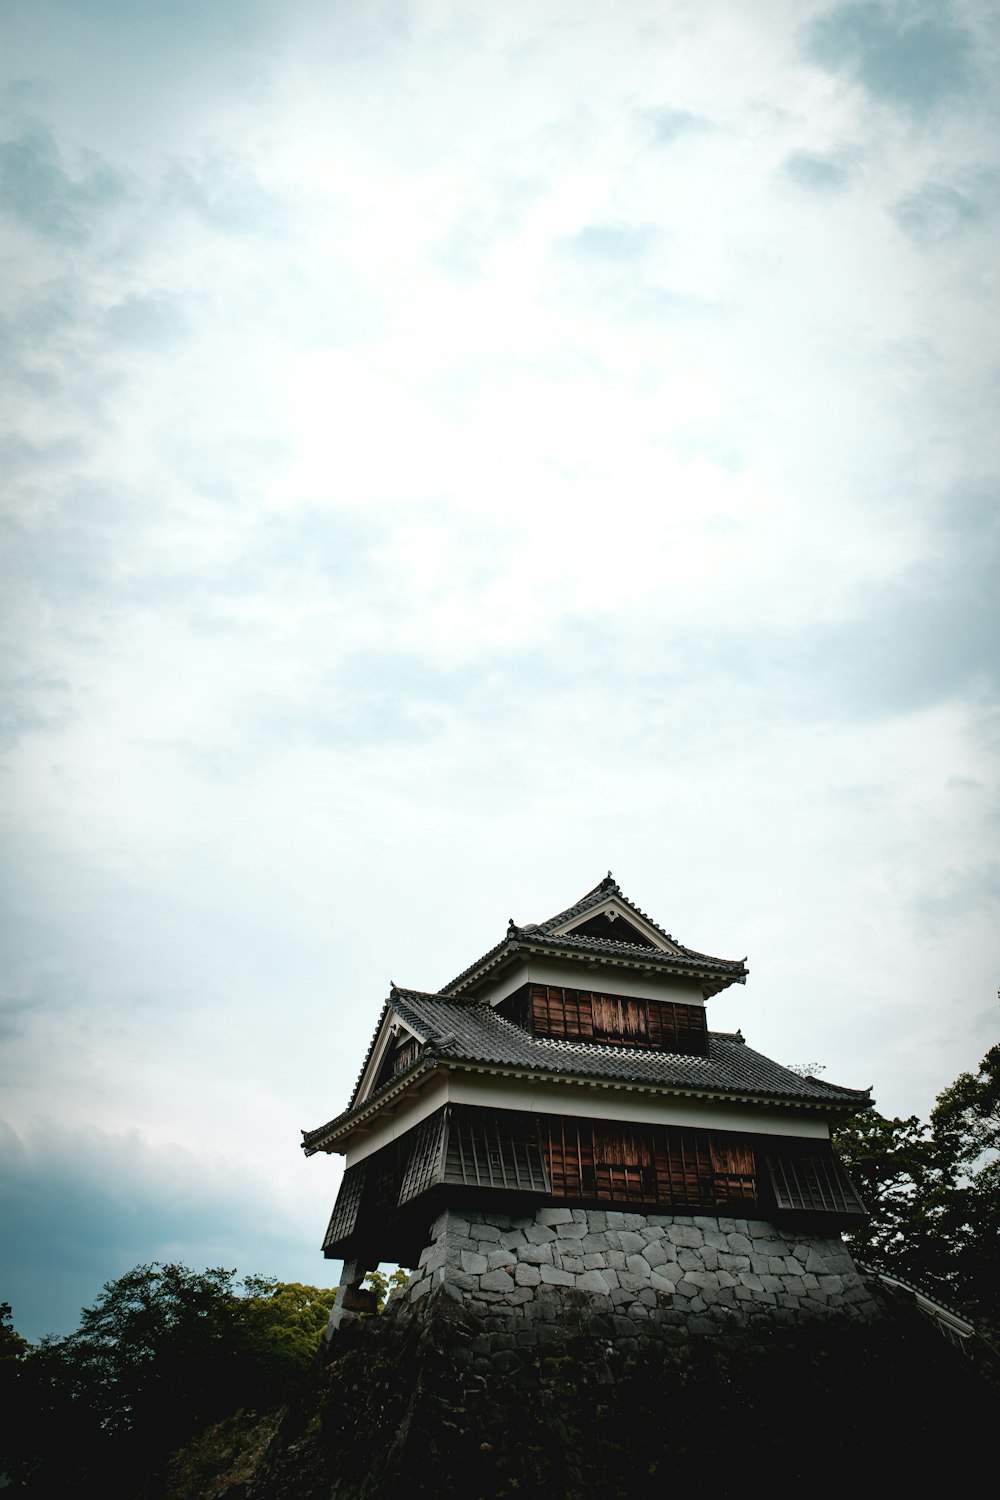 templo do pagode marrom e branco sob nuvens brancas